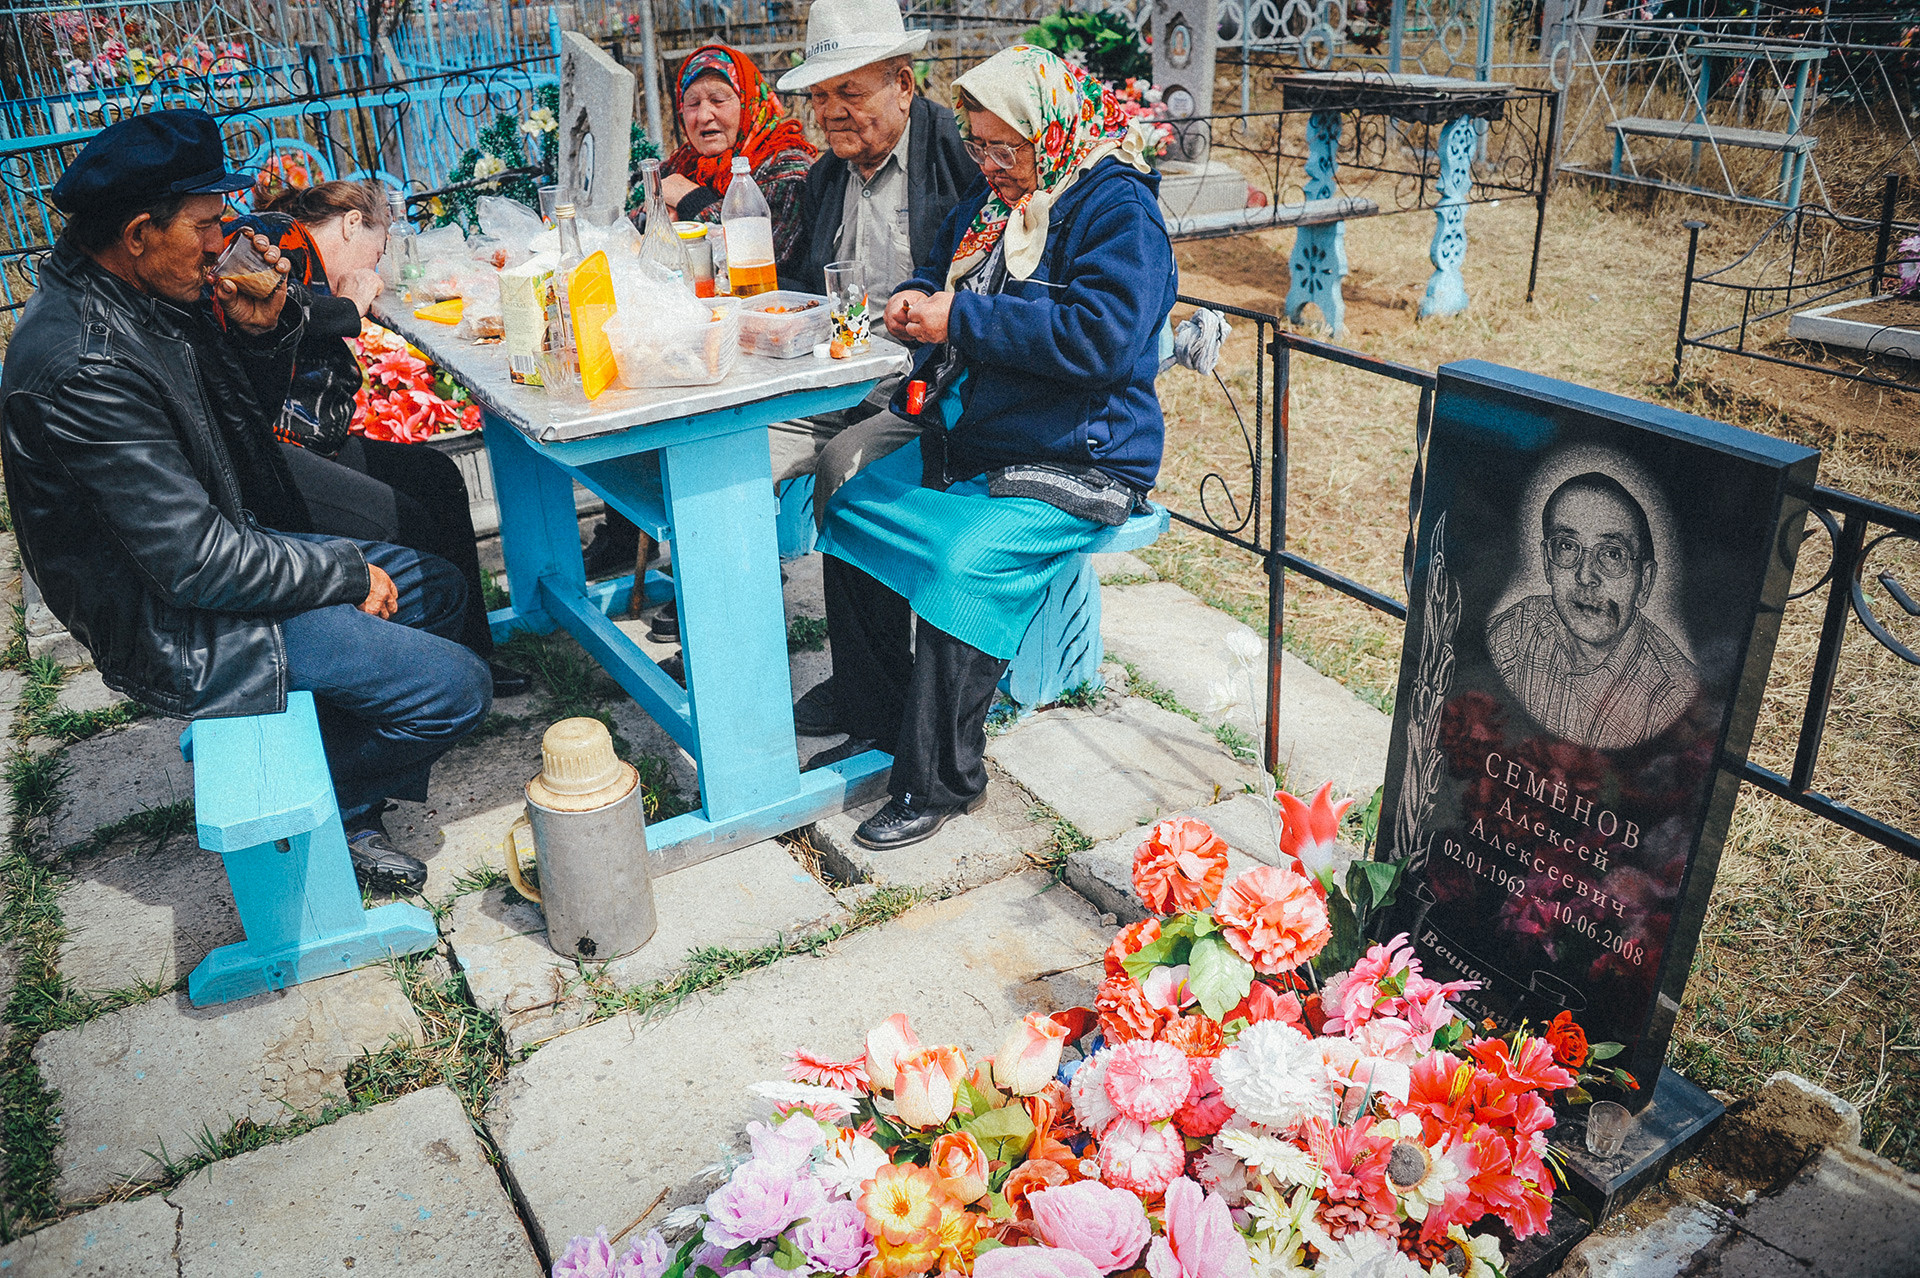 親戚のお墓で記念の食事をしている
ロシア人たち